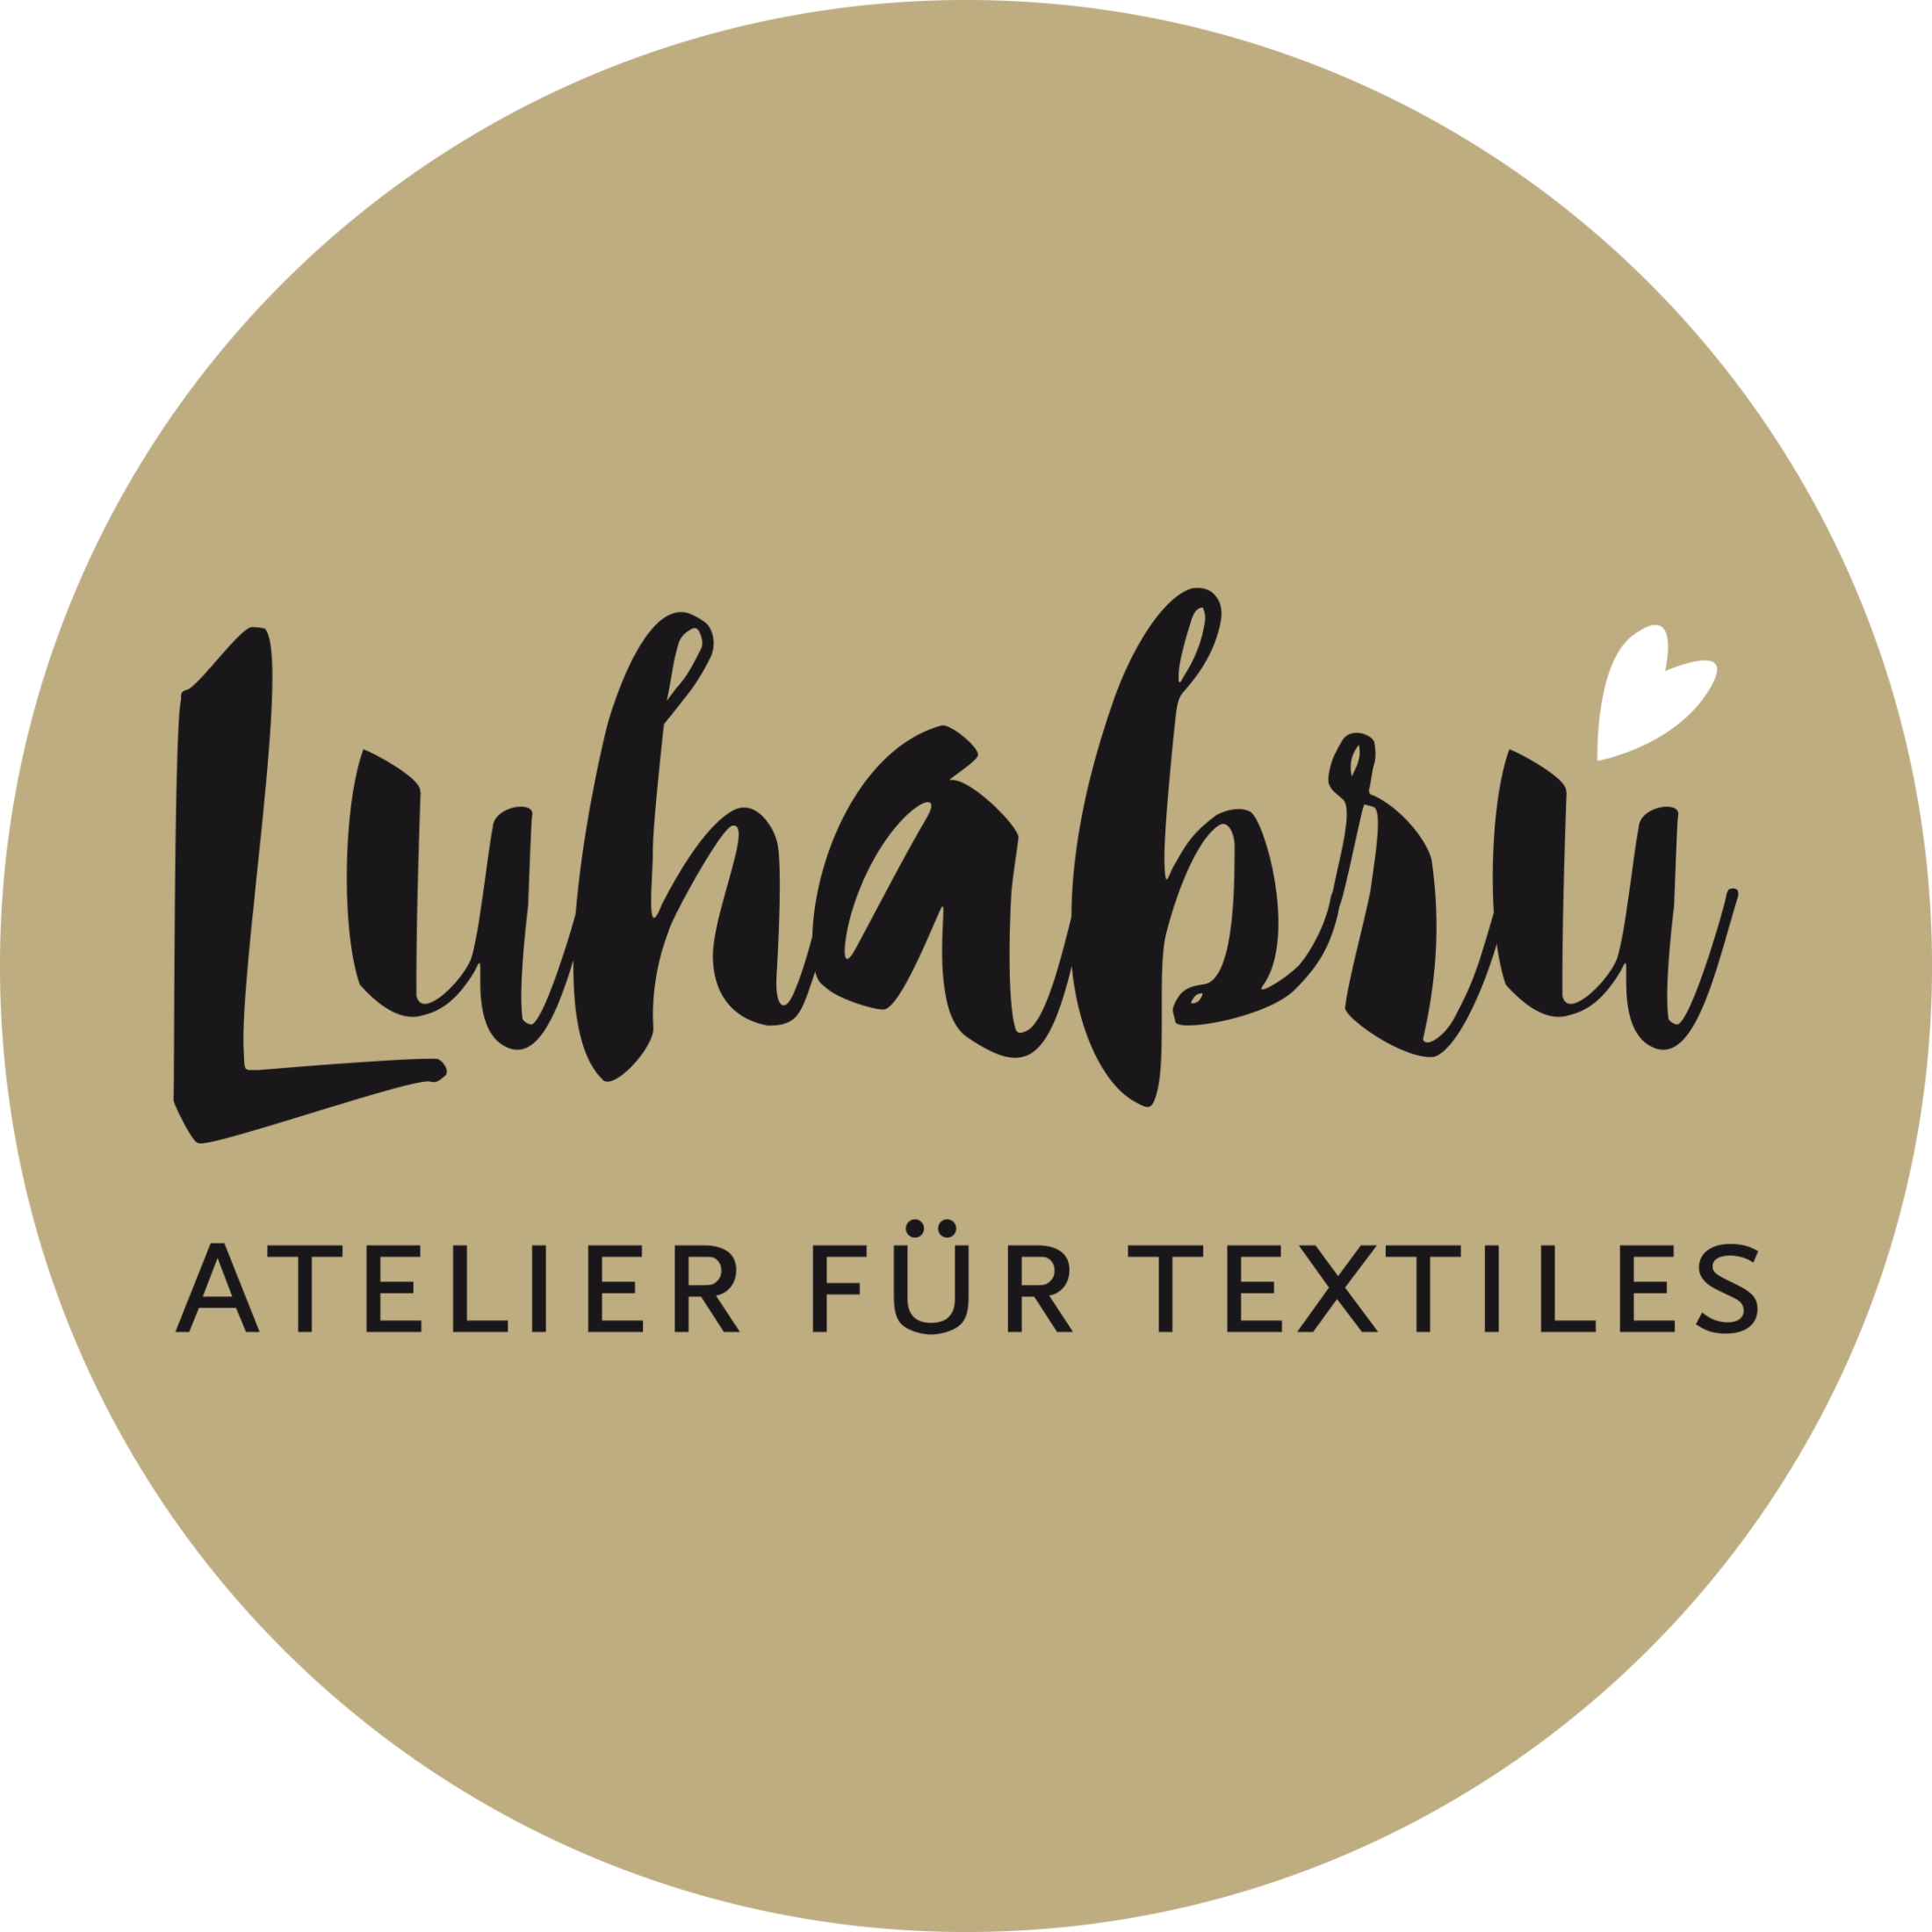 Luhabru Atelier für Textiles